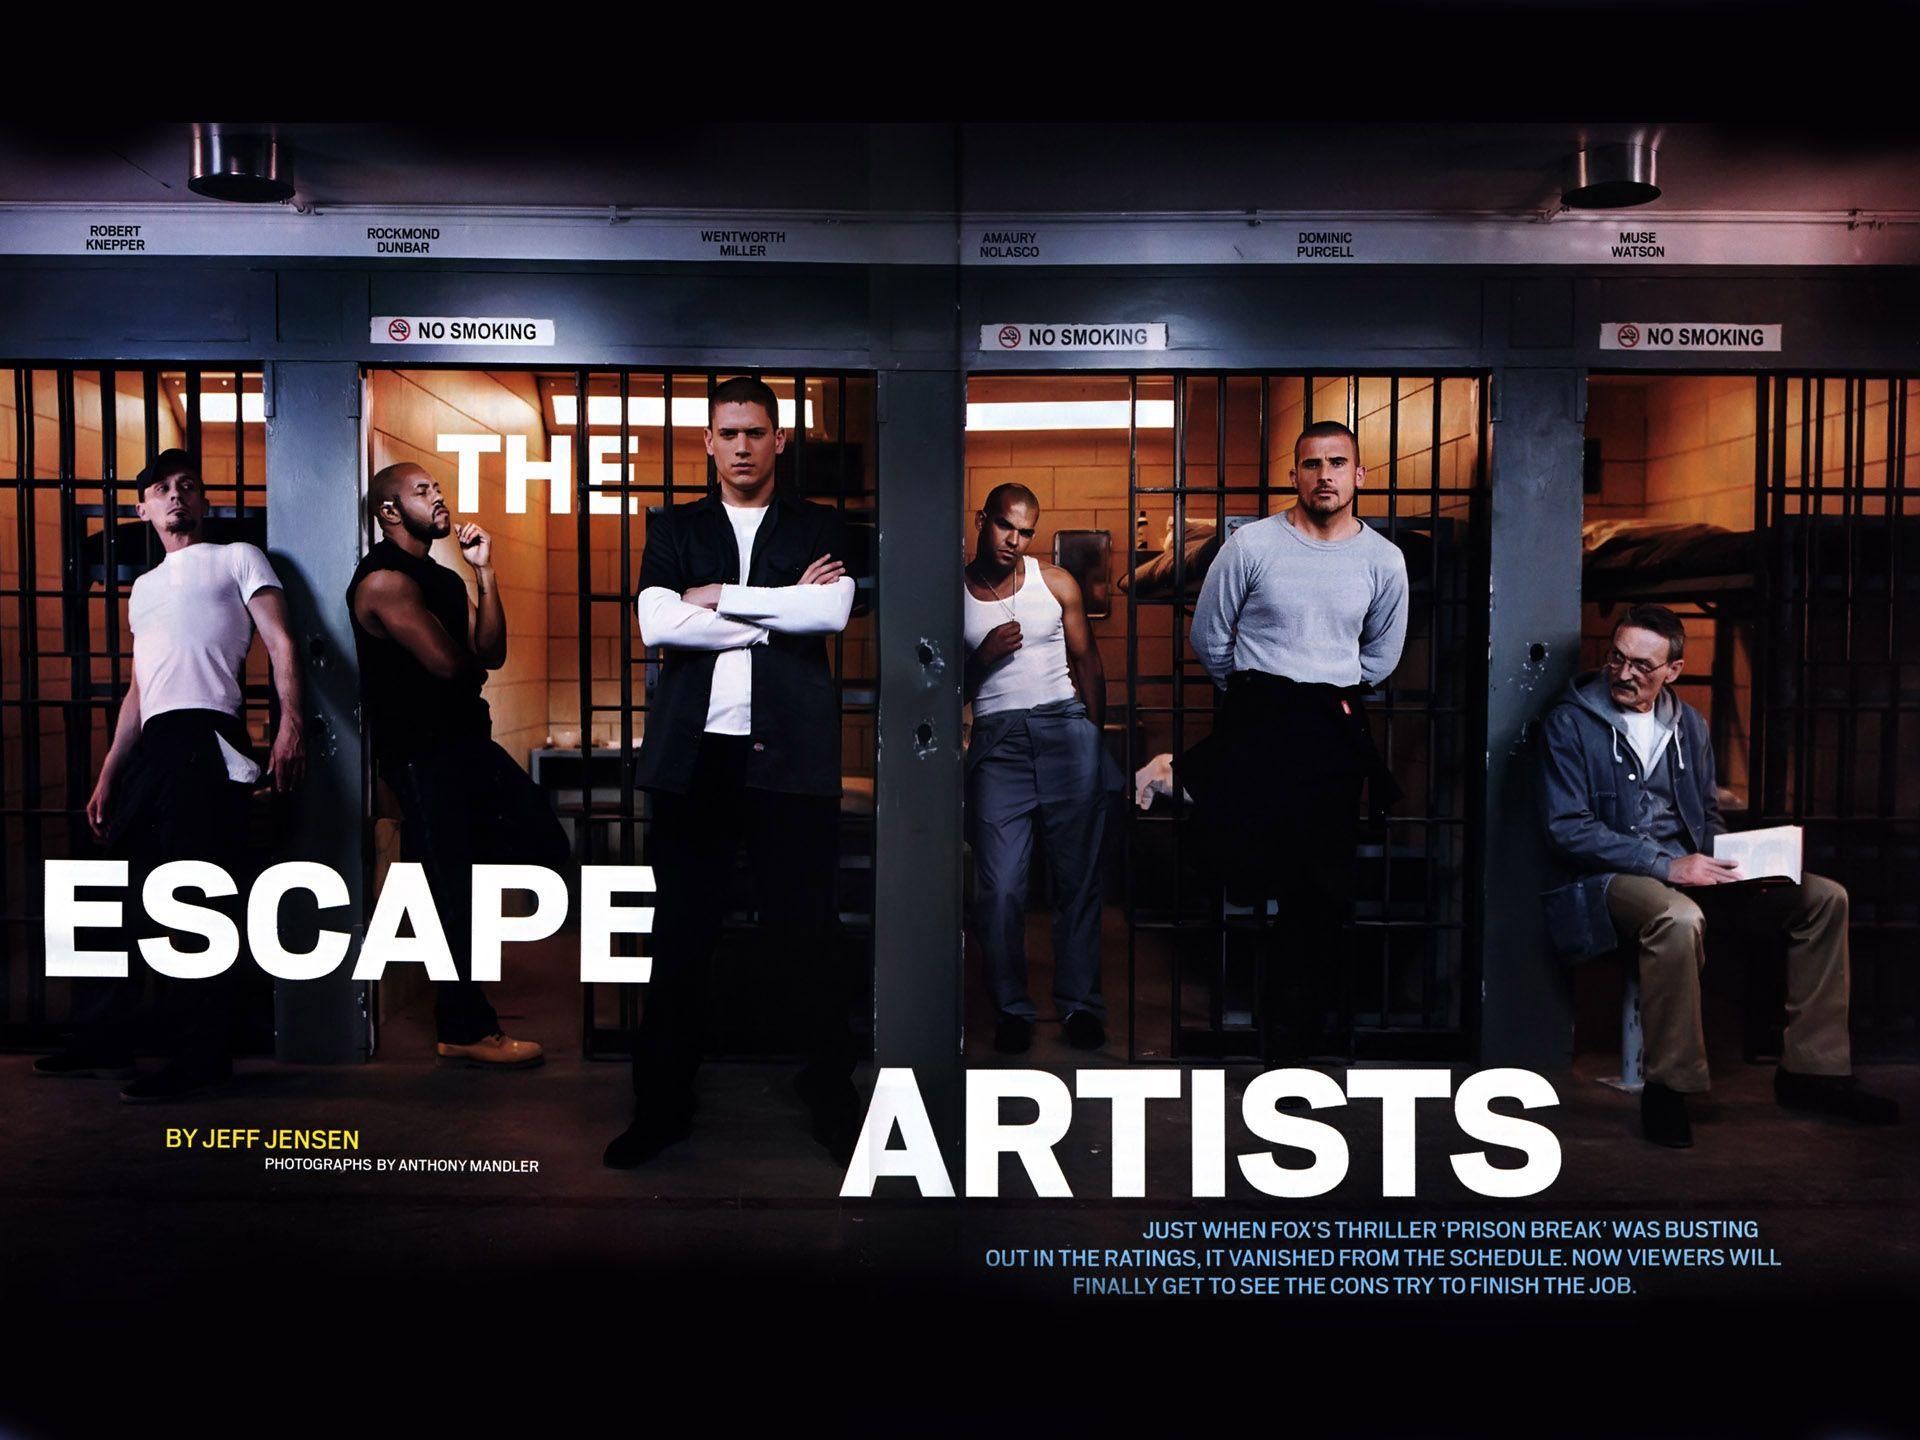 Prison Break wallpaper and image, picture, photo